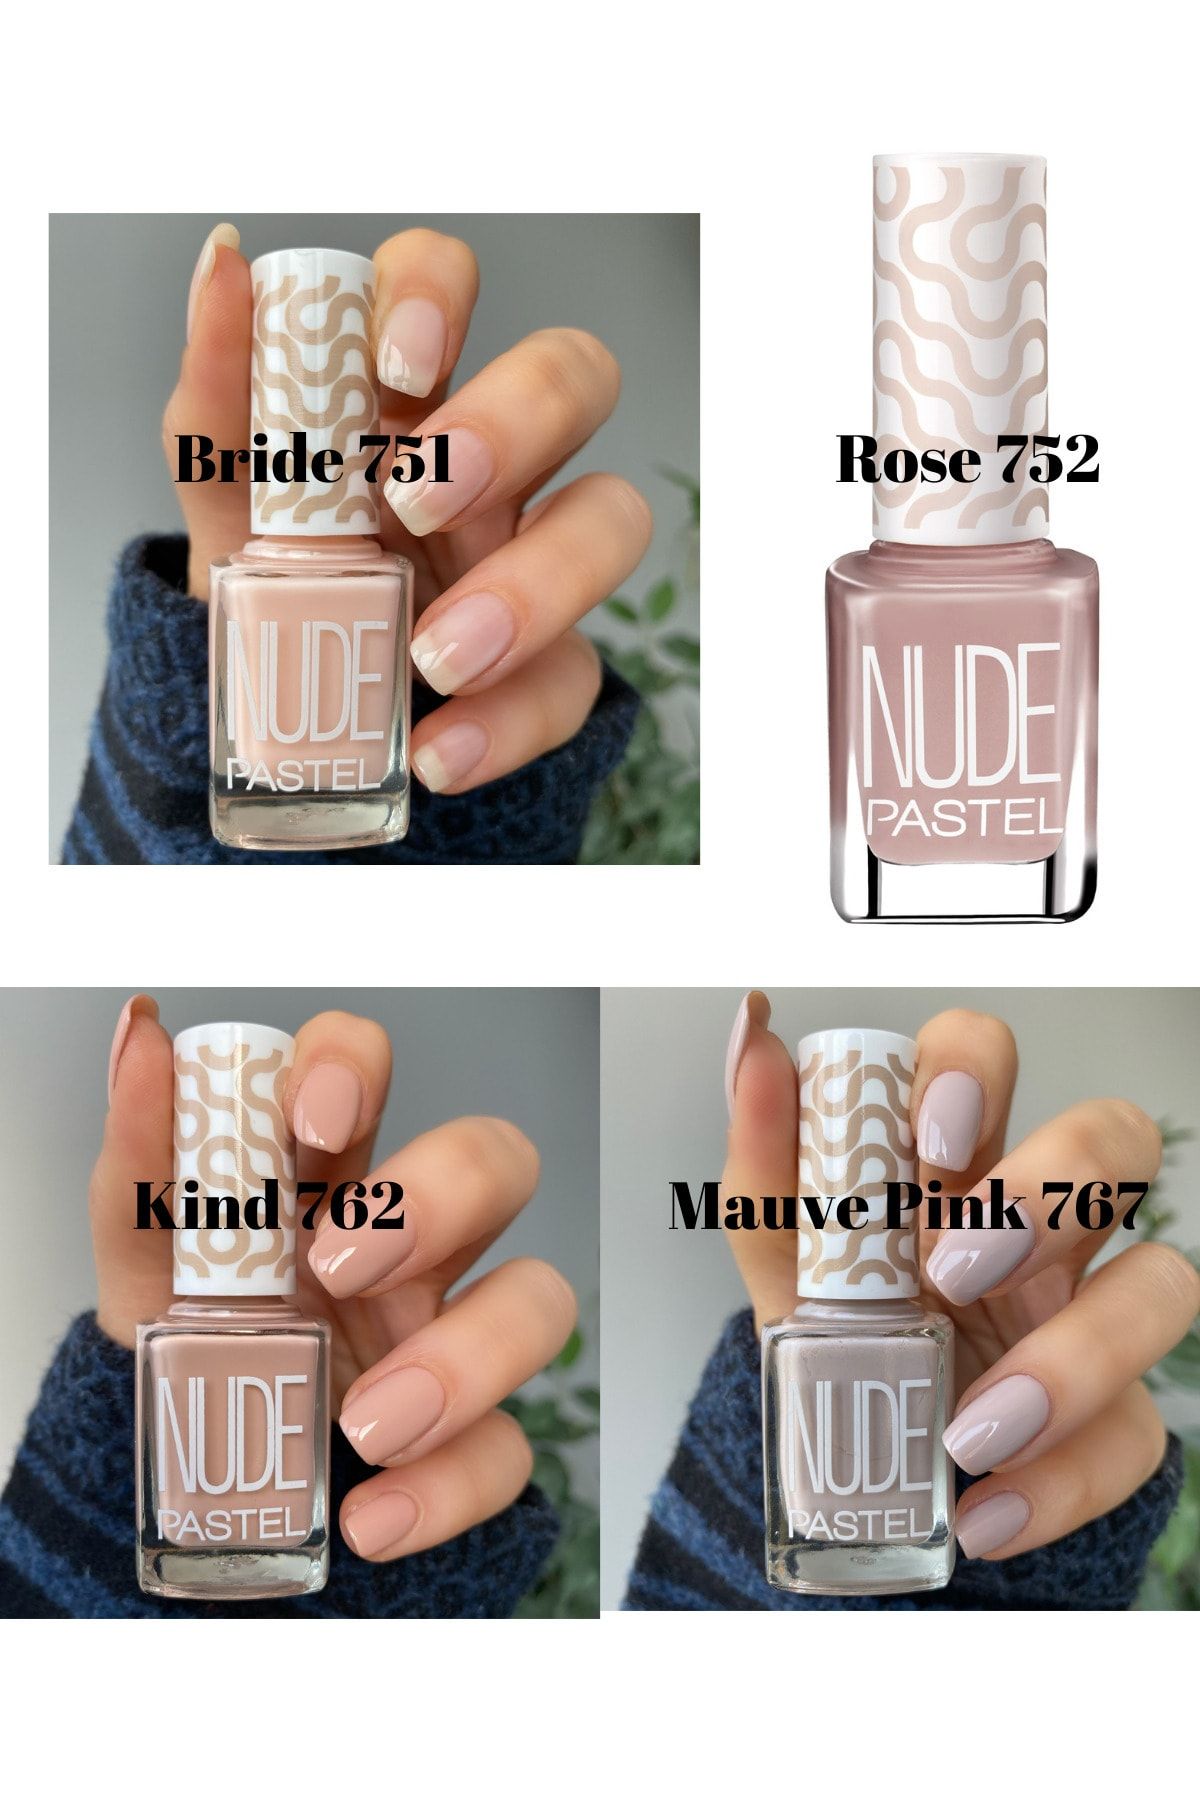 Pastel 4’lü Oje Seti Nude Bride 751 Nude Rose 752 Nude Kind 762 Nude Mauve Pink 767 Nail Polish